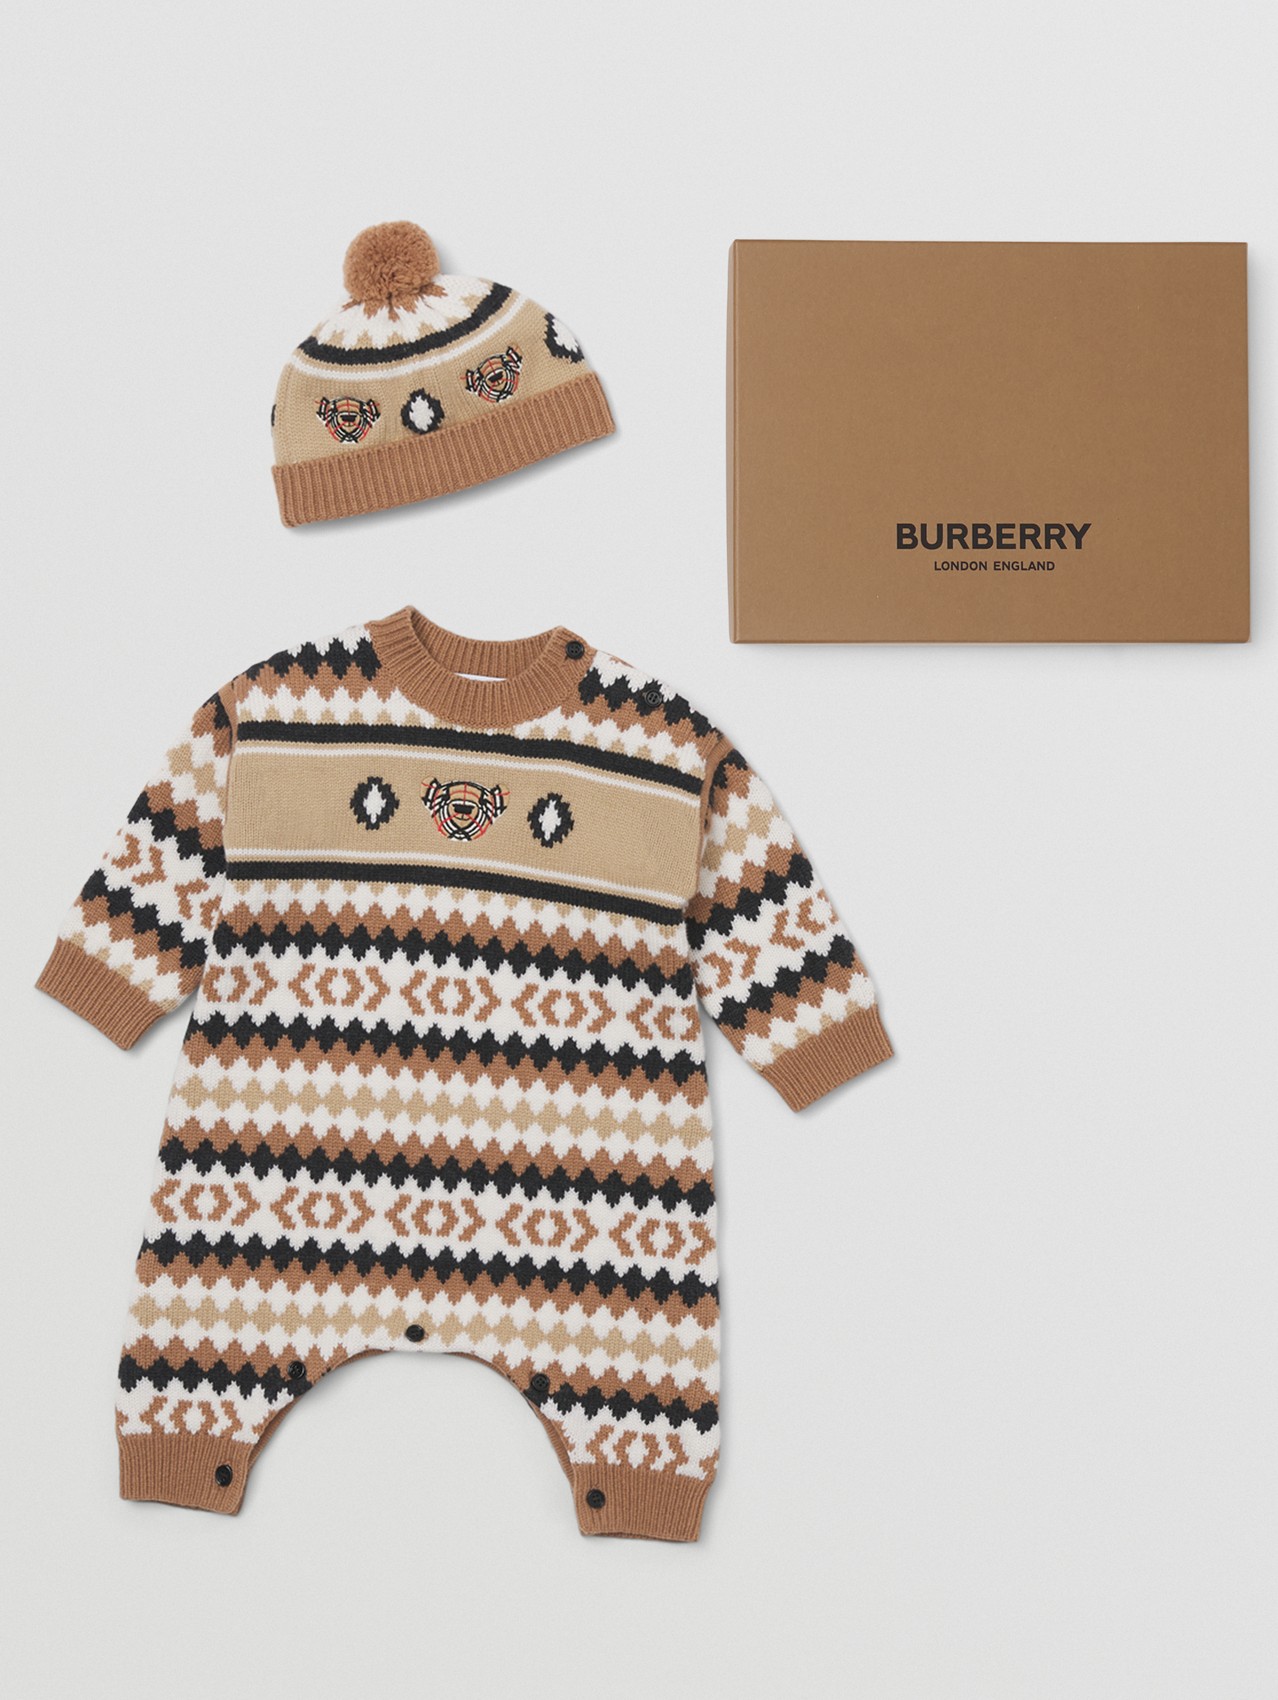 费尔岛花纹羊毛混纺两件套婴儿礼品套装 in 驼色